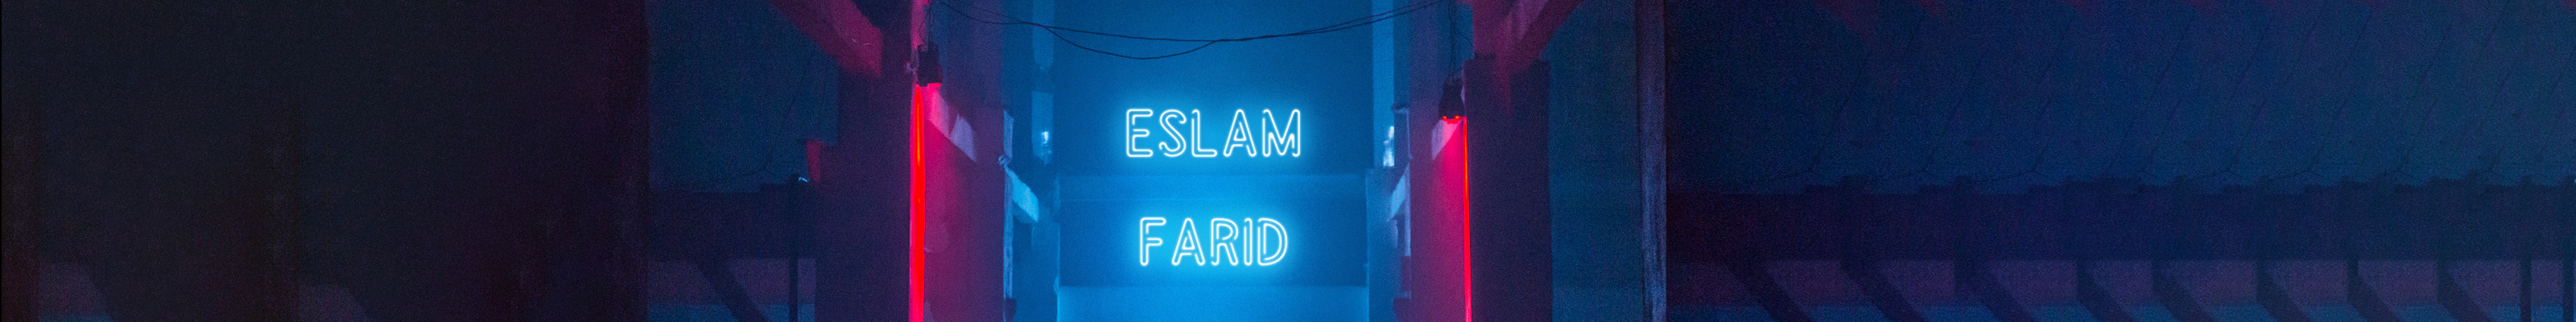 Banner profilu uživatele Eslam Farid